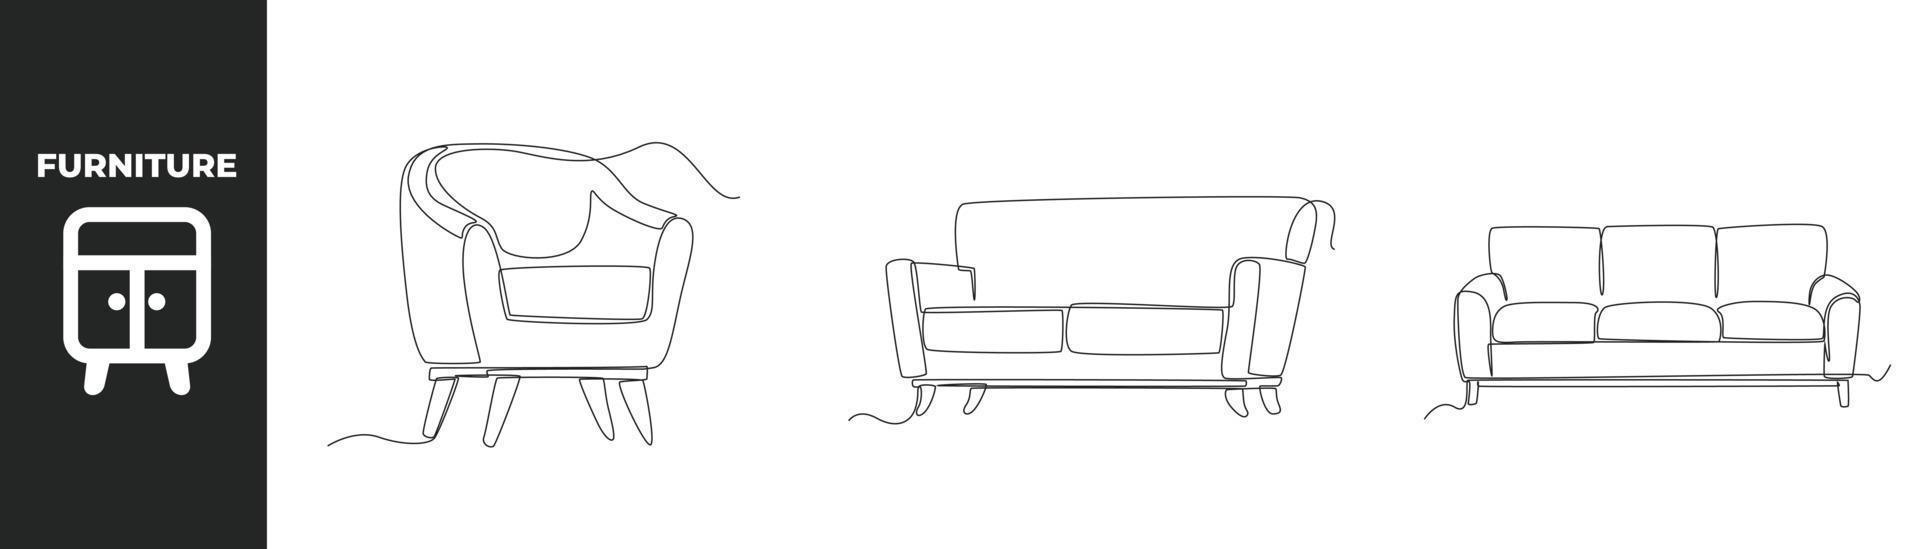 concepto de juego de muebles modernos de dibujo continuo de una línea. sillón y sillón de moda. ilustración gráfica vectorial de diseño de dibujo de una sola línea. vector